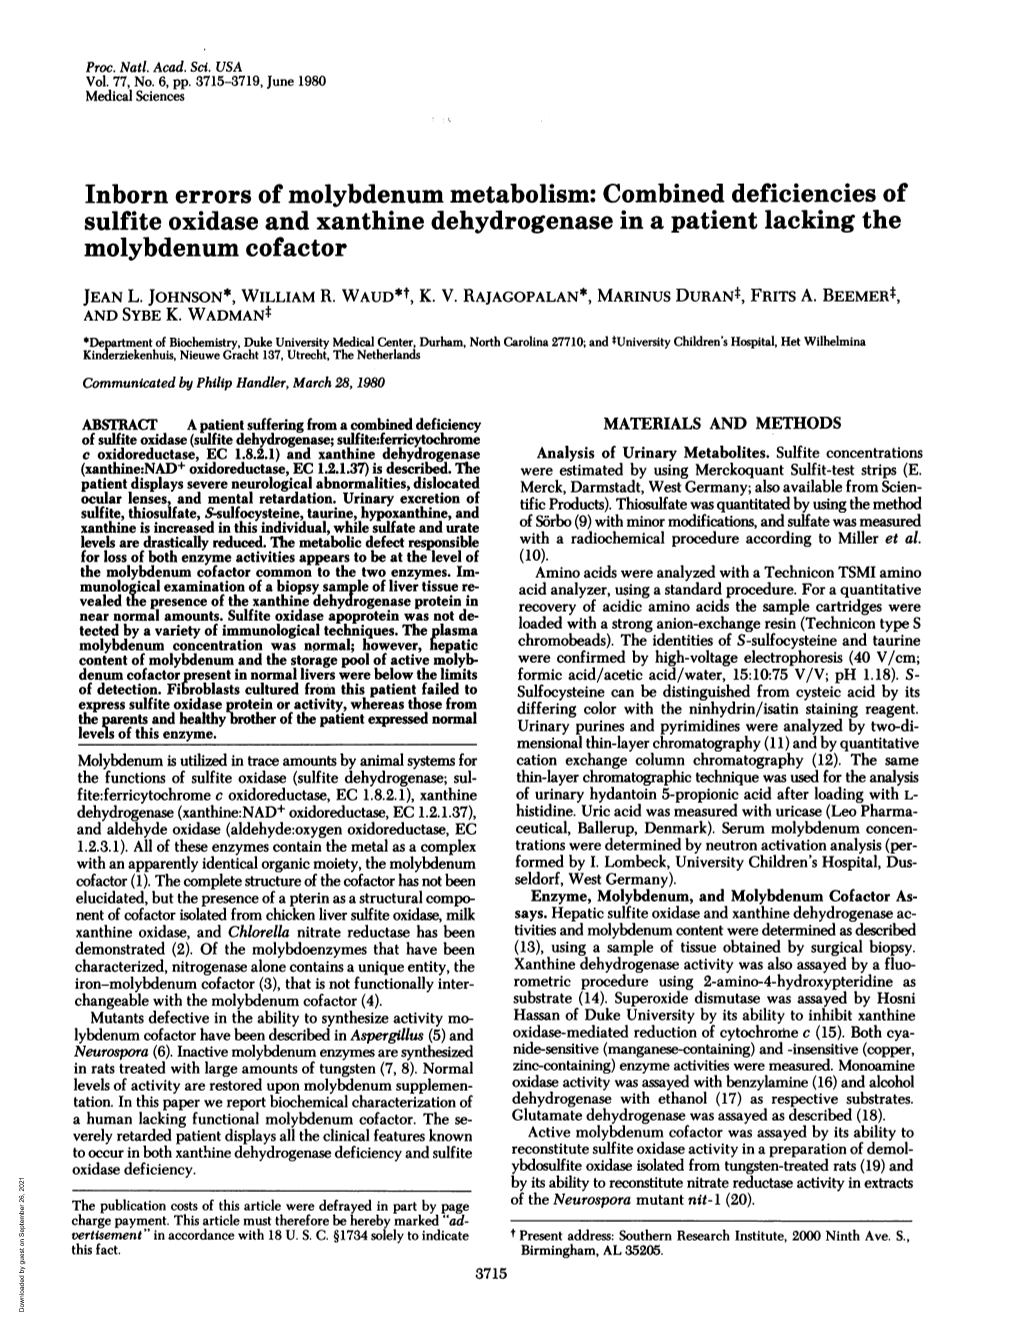 Combined Deficiencies of Molybdenum Cofactor